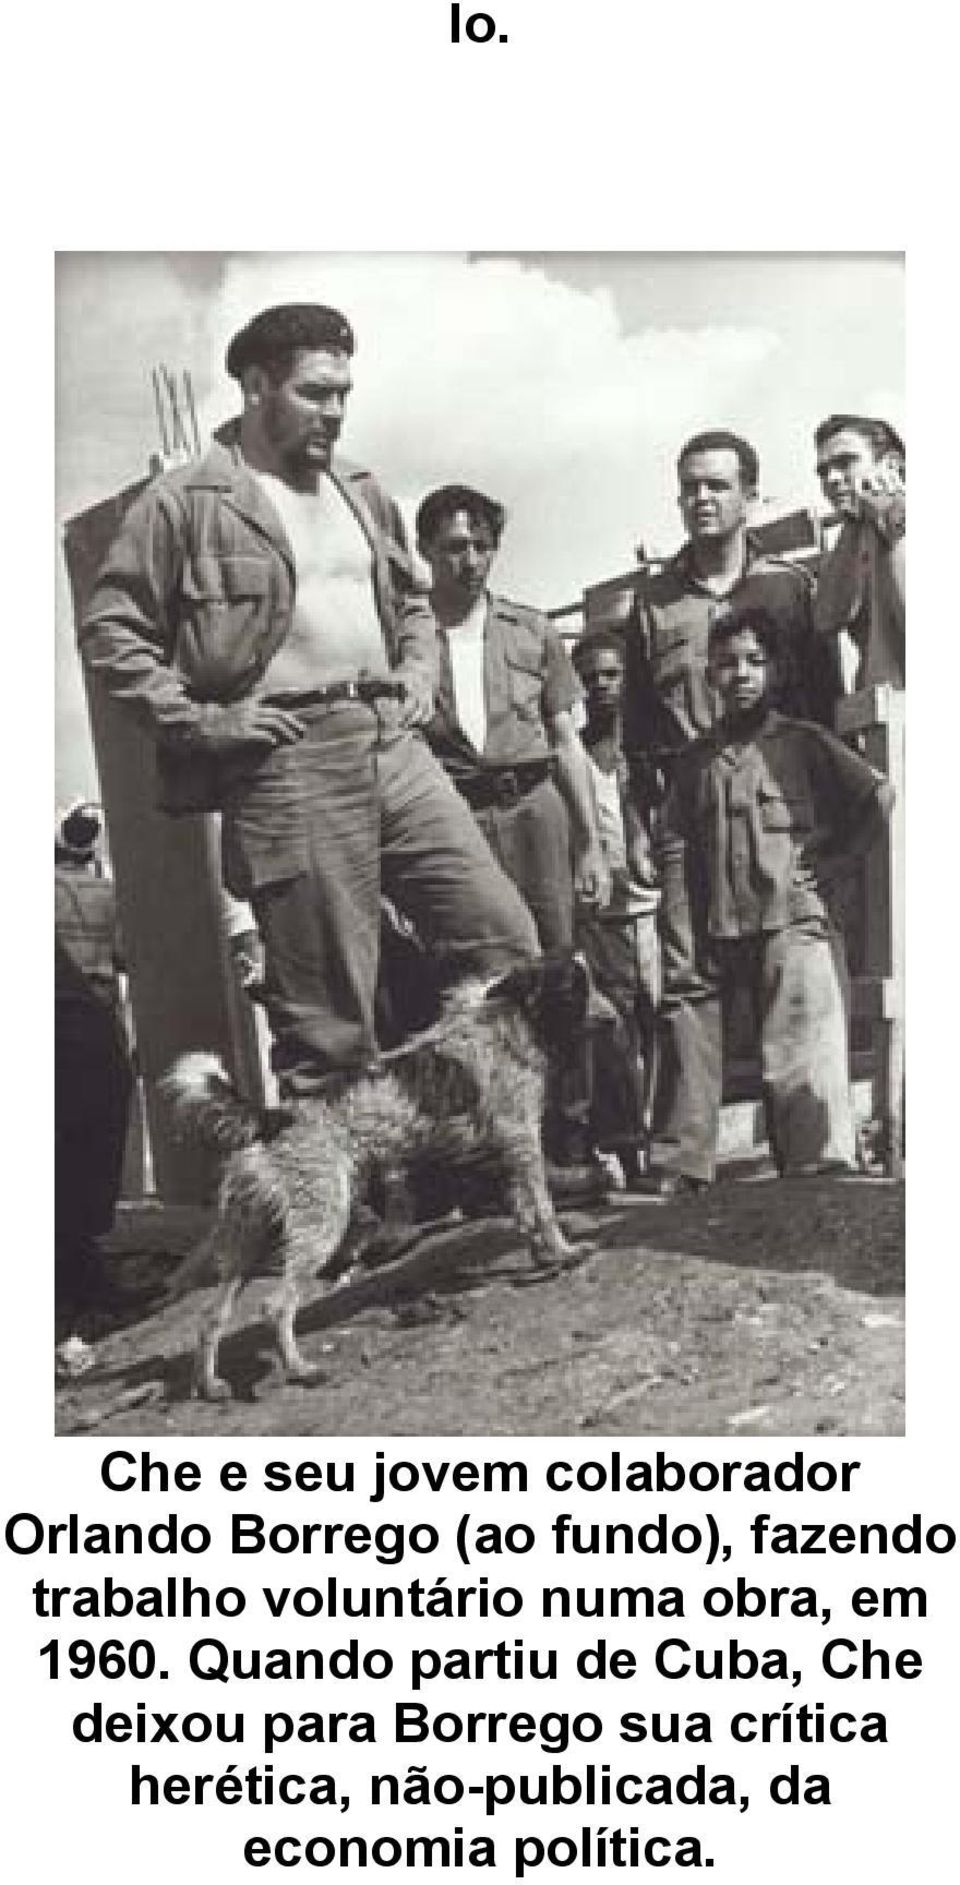 1960. Quando partiu de Cuba, Che deixou para Borrego